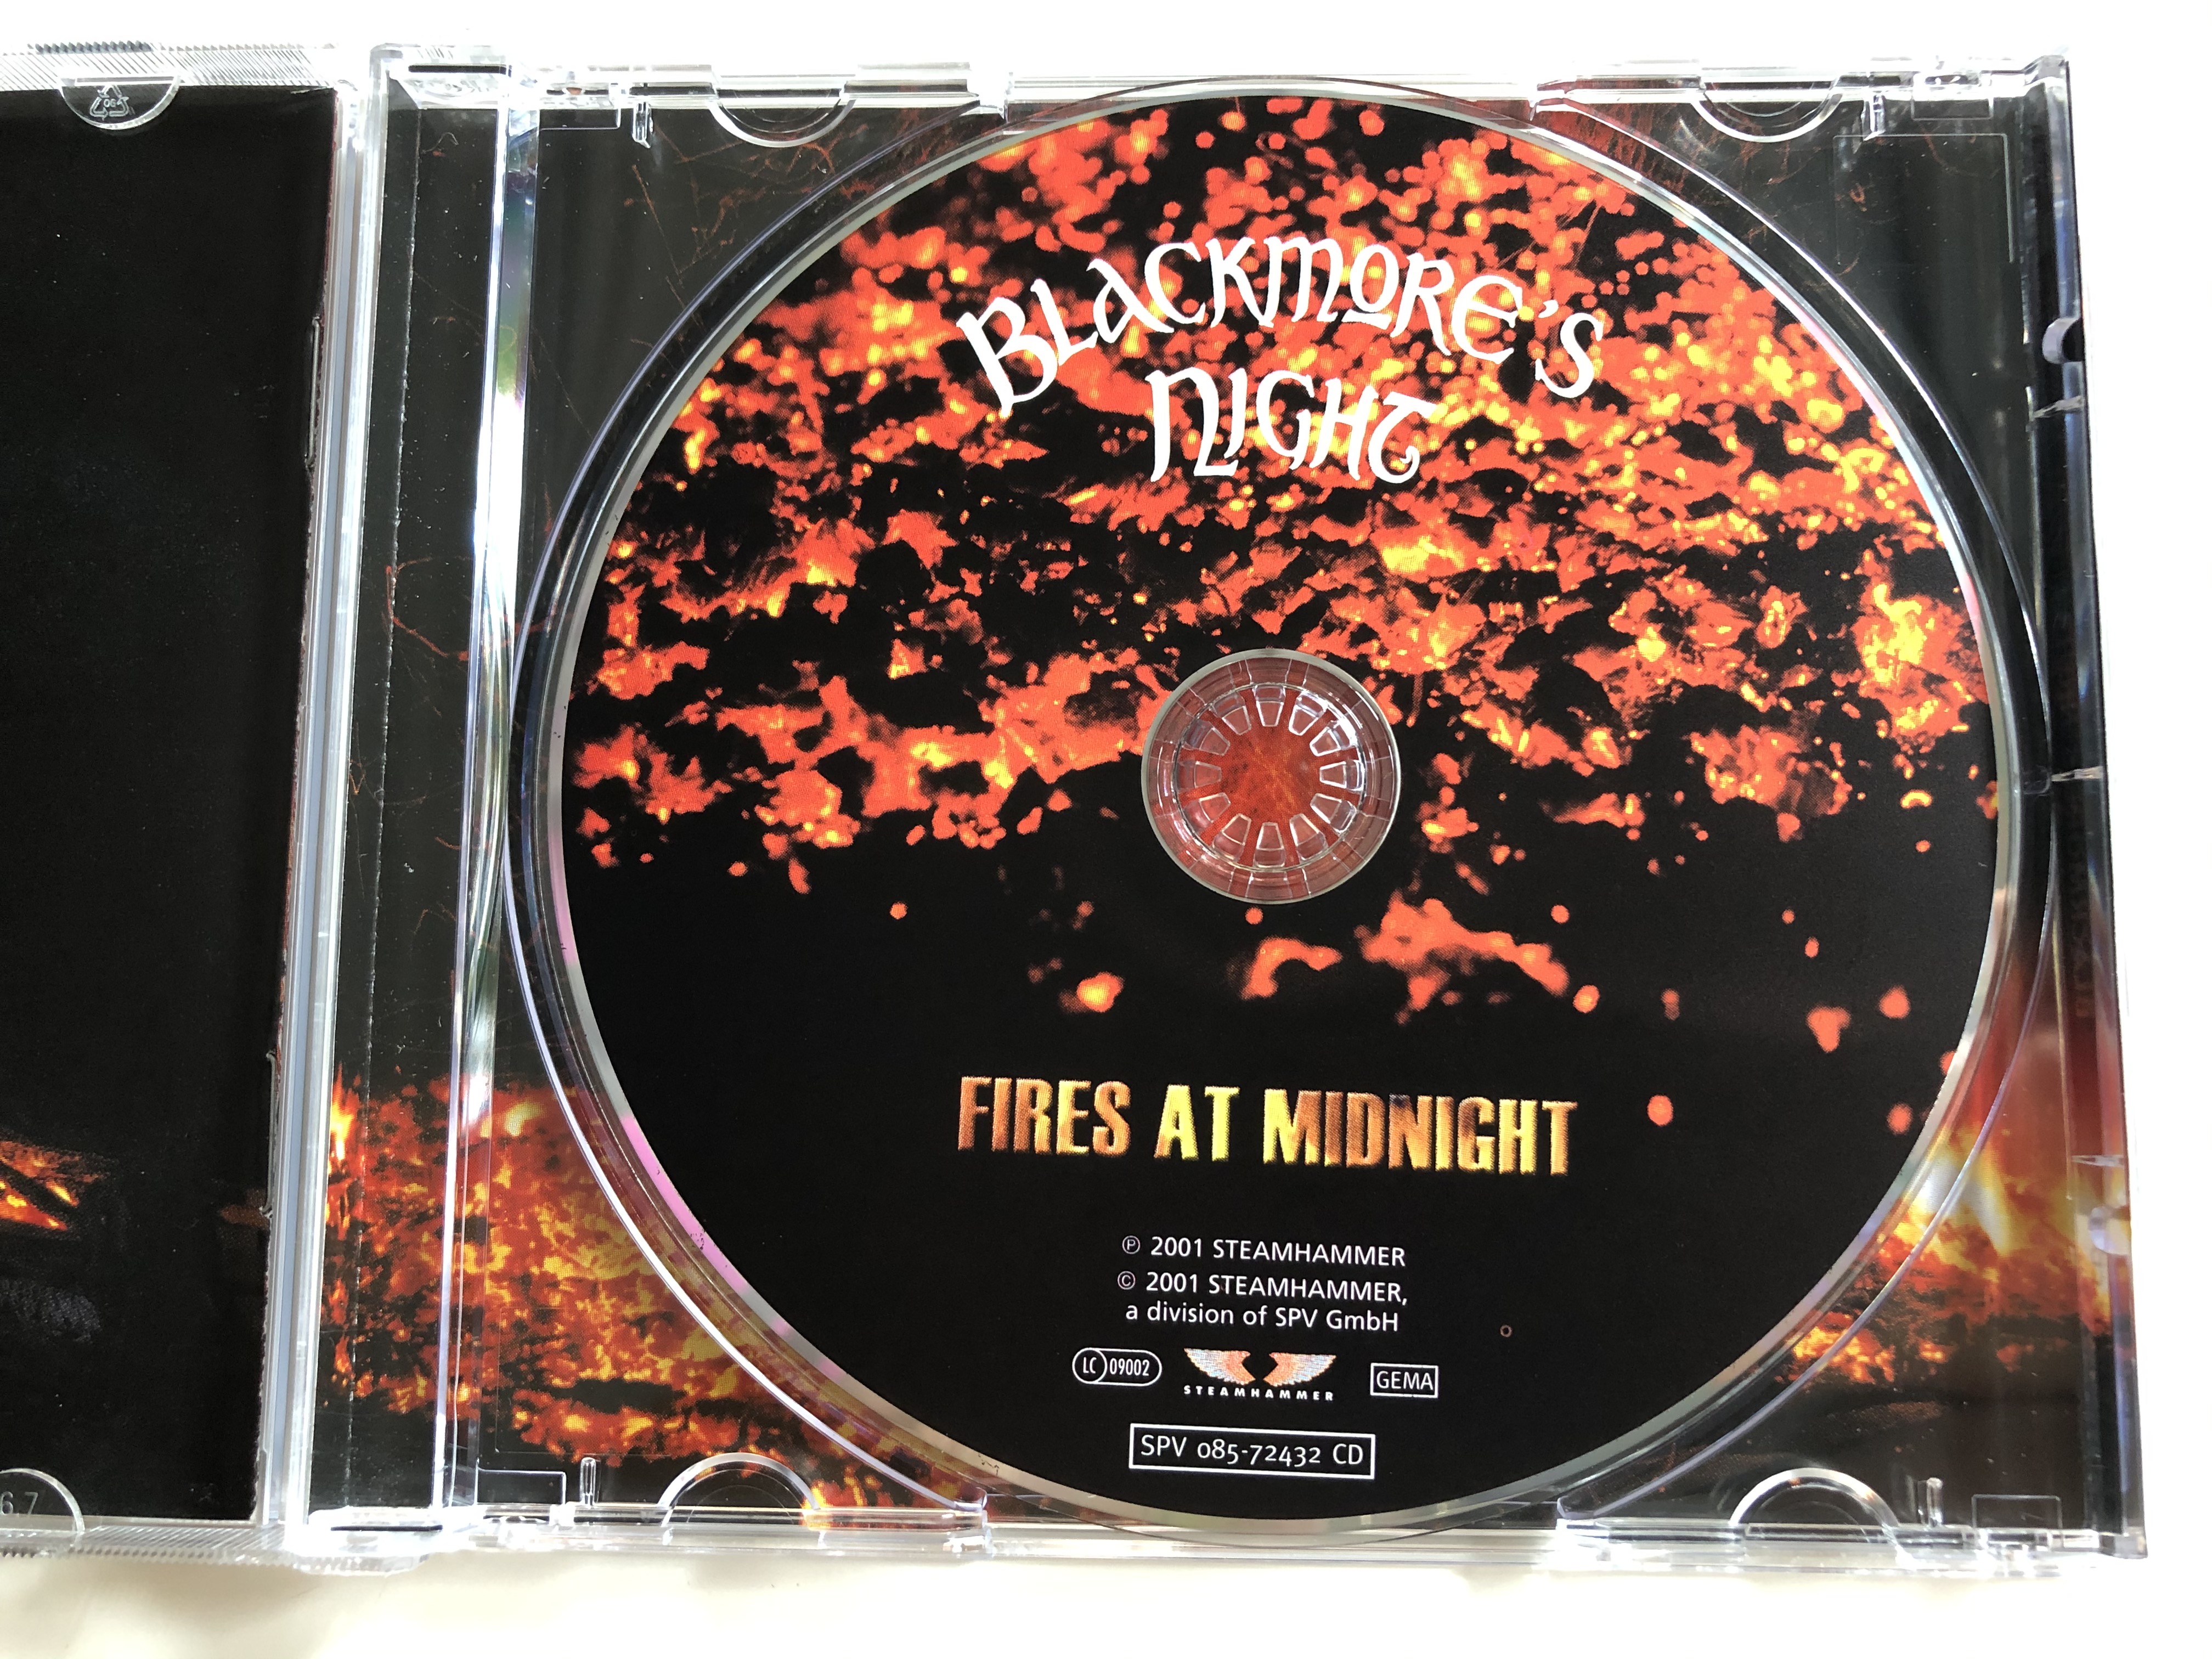 blackmore-s-night-fires-at-midnight-steamhammer-audio-cd-2001-spv-085-72432-cd-2-.jpg